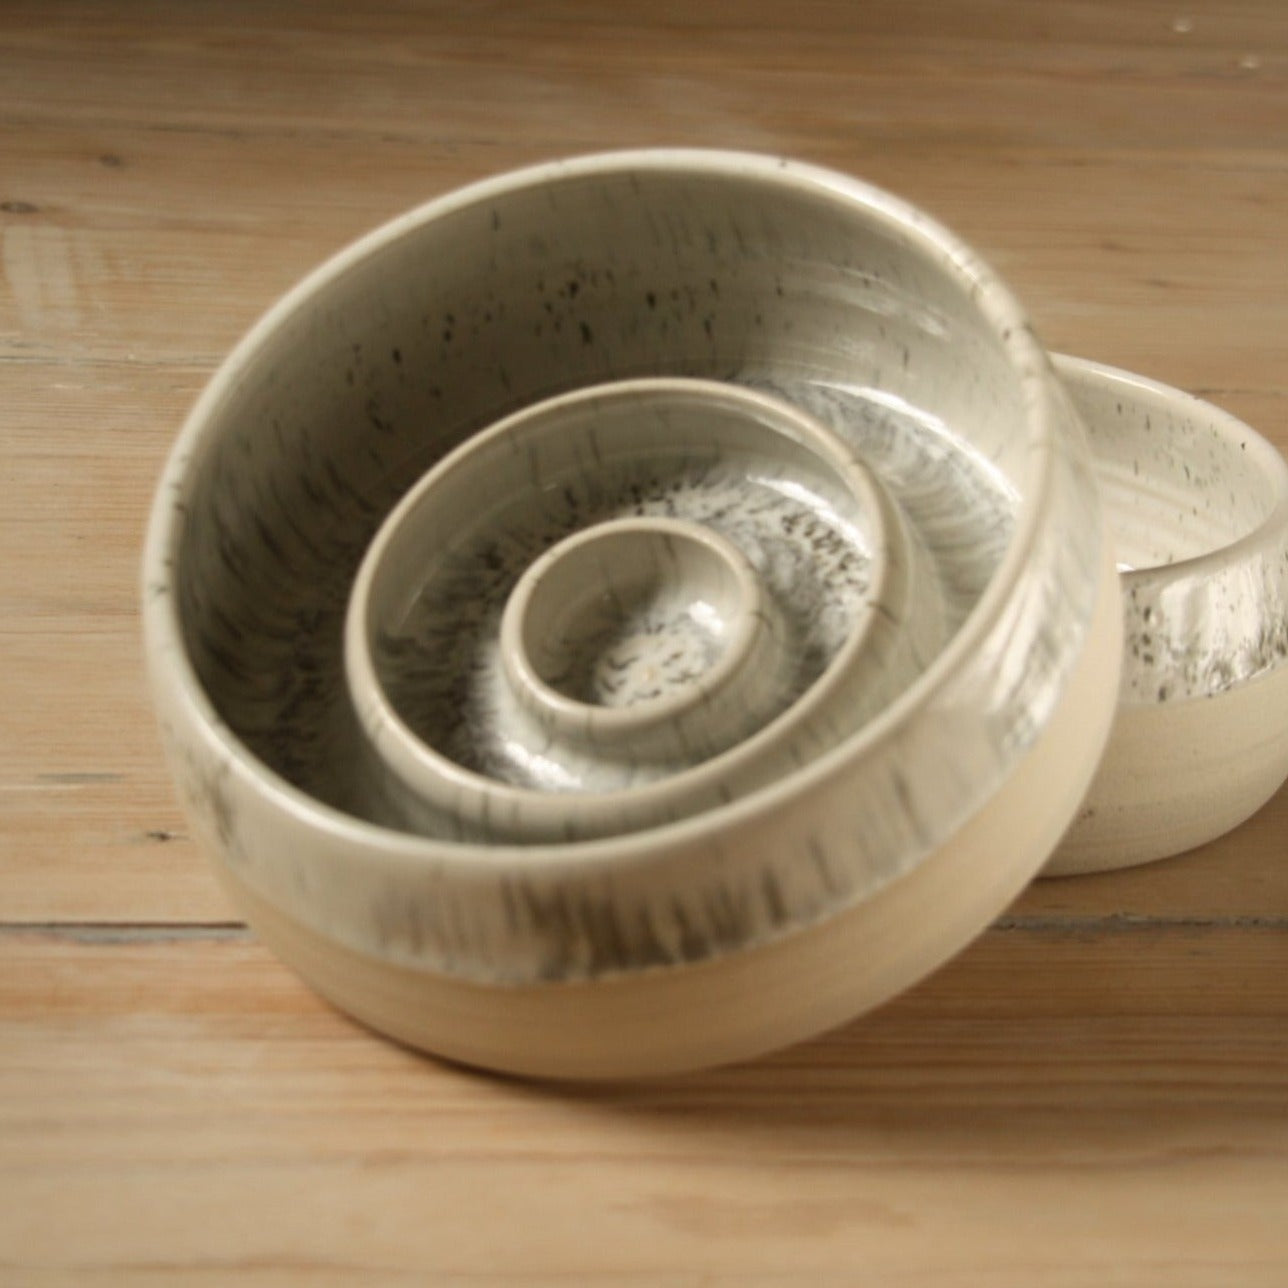 White speckled ceramic slow feeder dog bowl